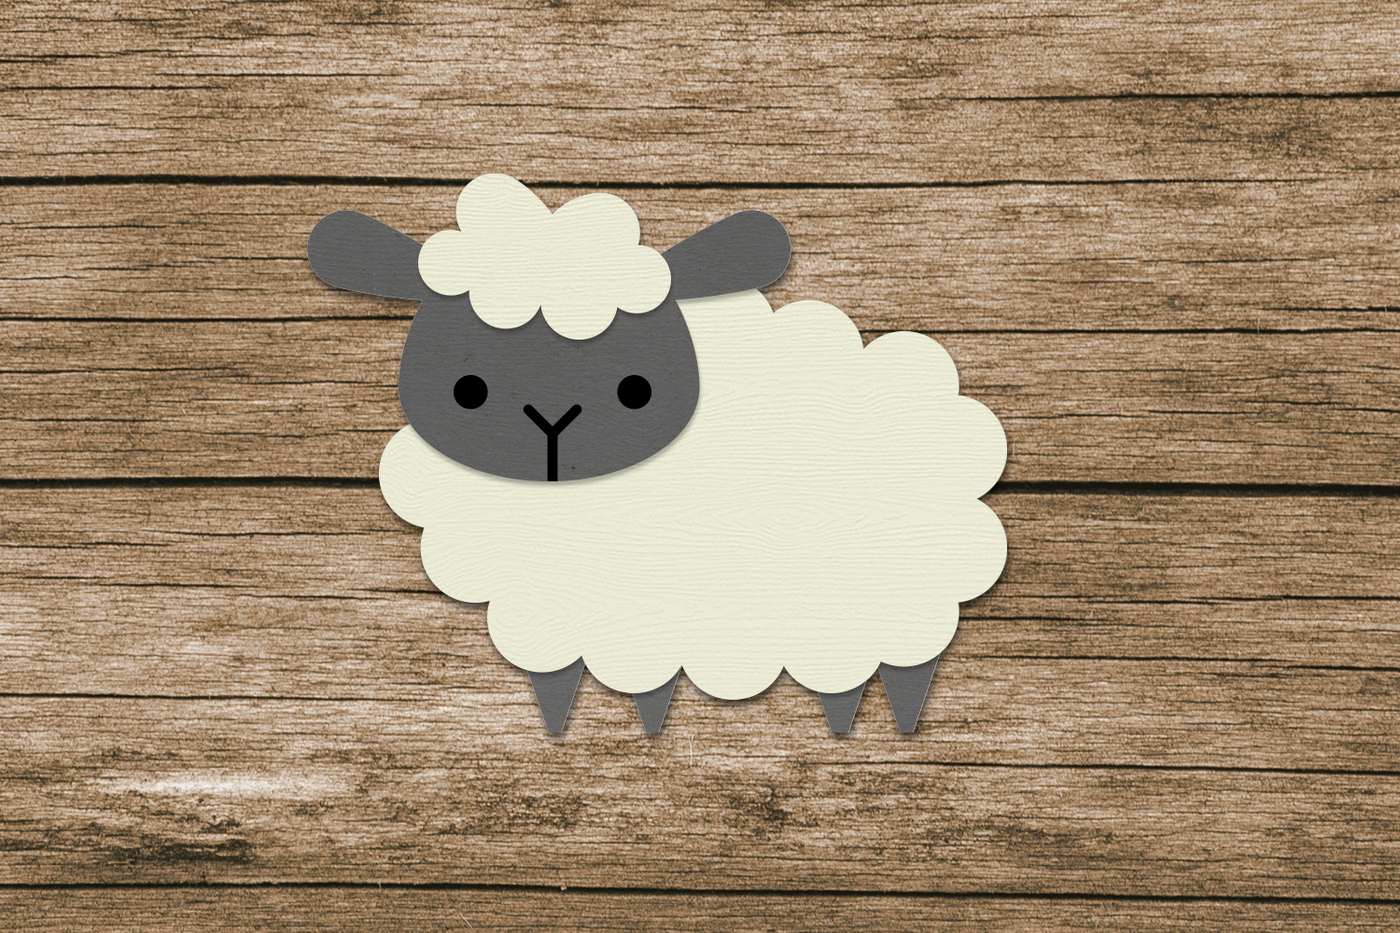 A cute paper sheep.